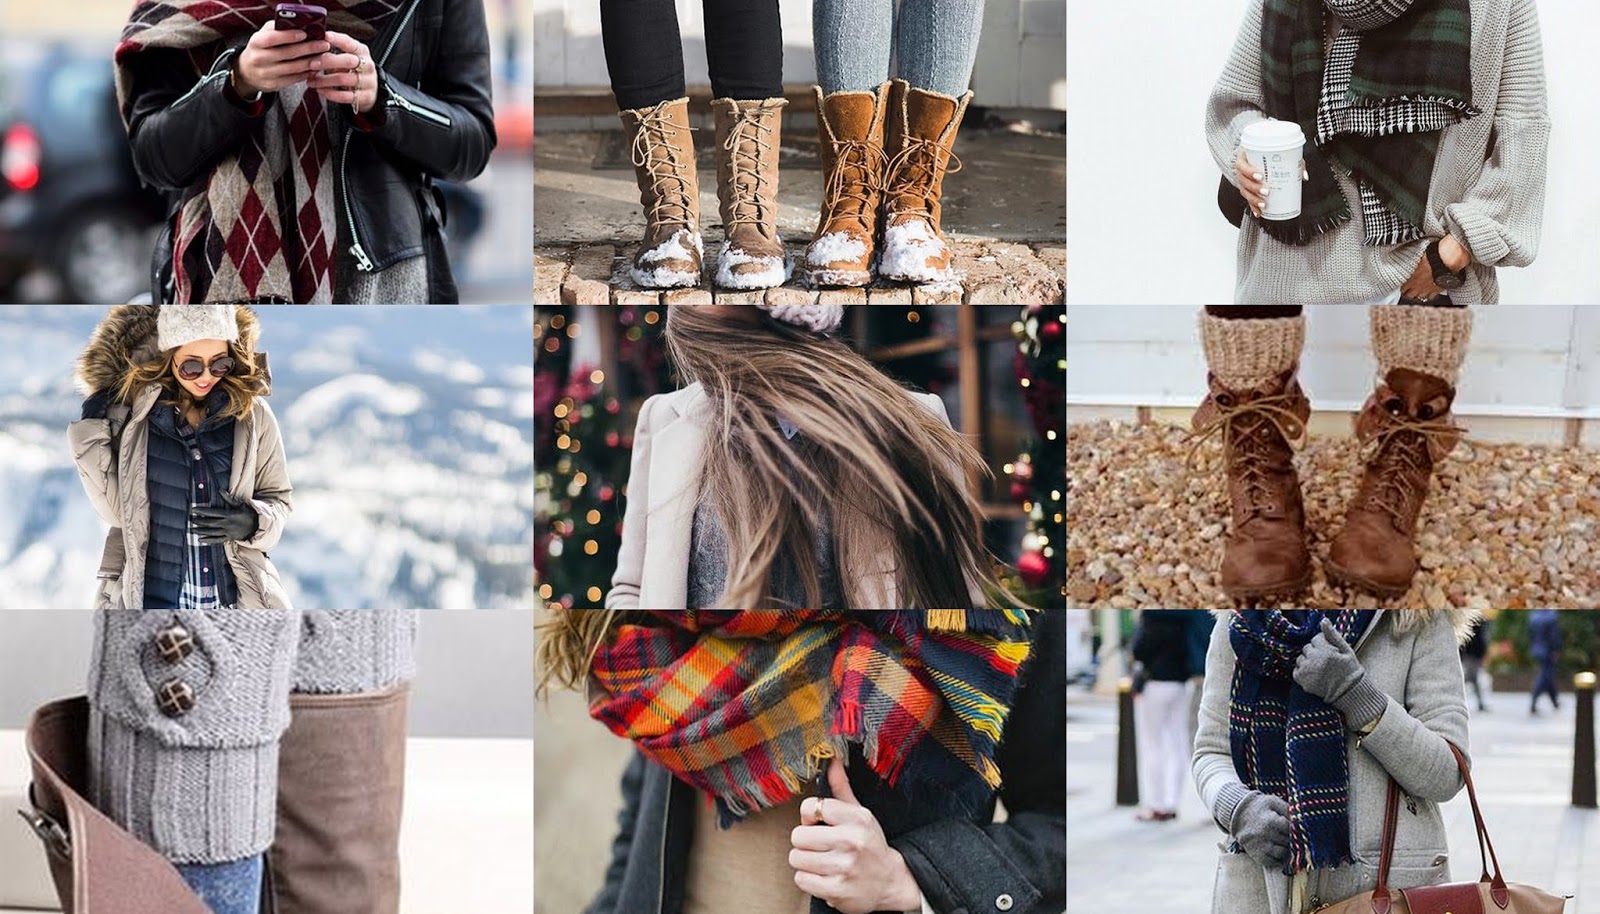 Нужно тепло одеться. Одеться тепло и красиво. Тепло и стильно зимой. Тепло и красиво одеться зимой. Стильно но тепло одеться зимой.